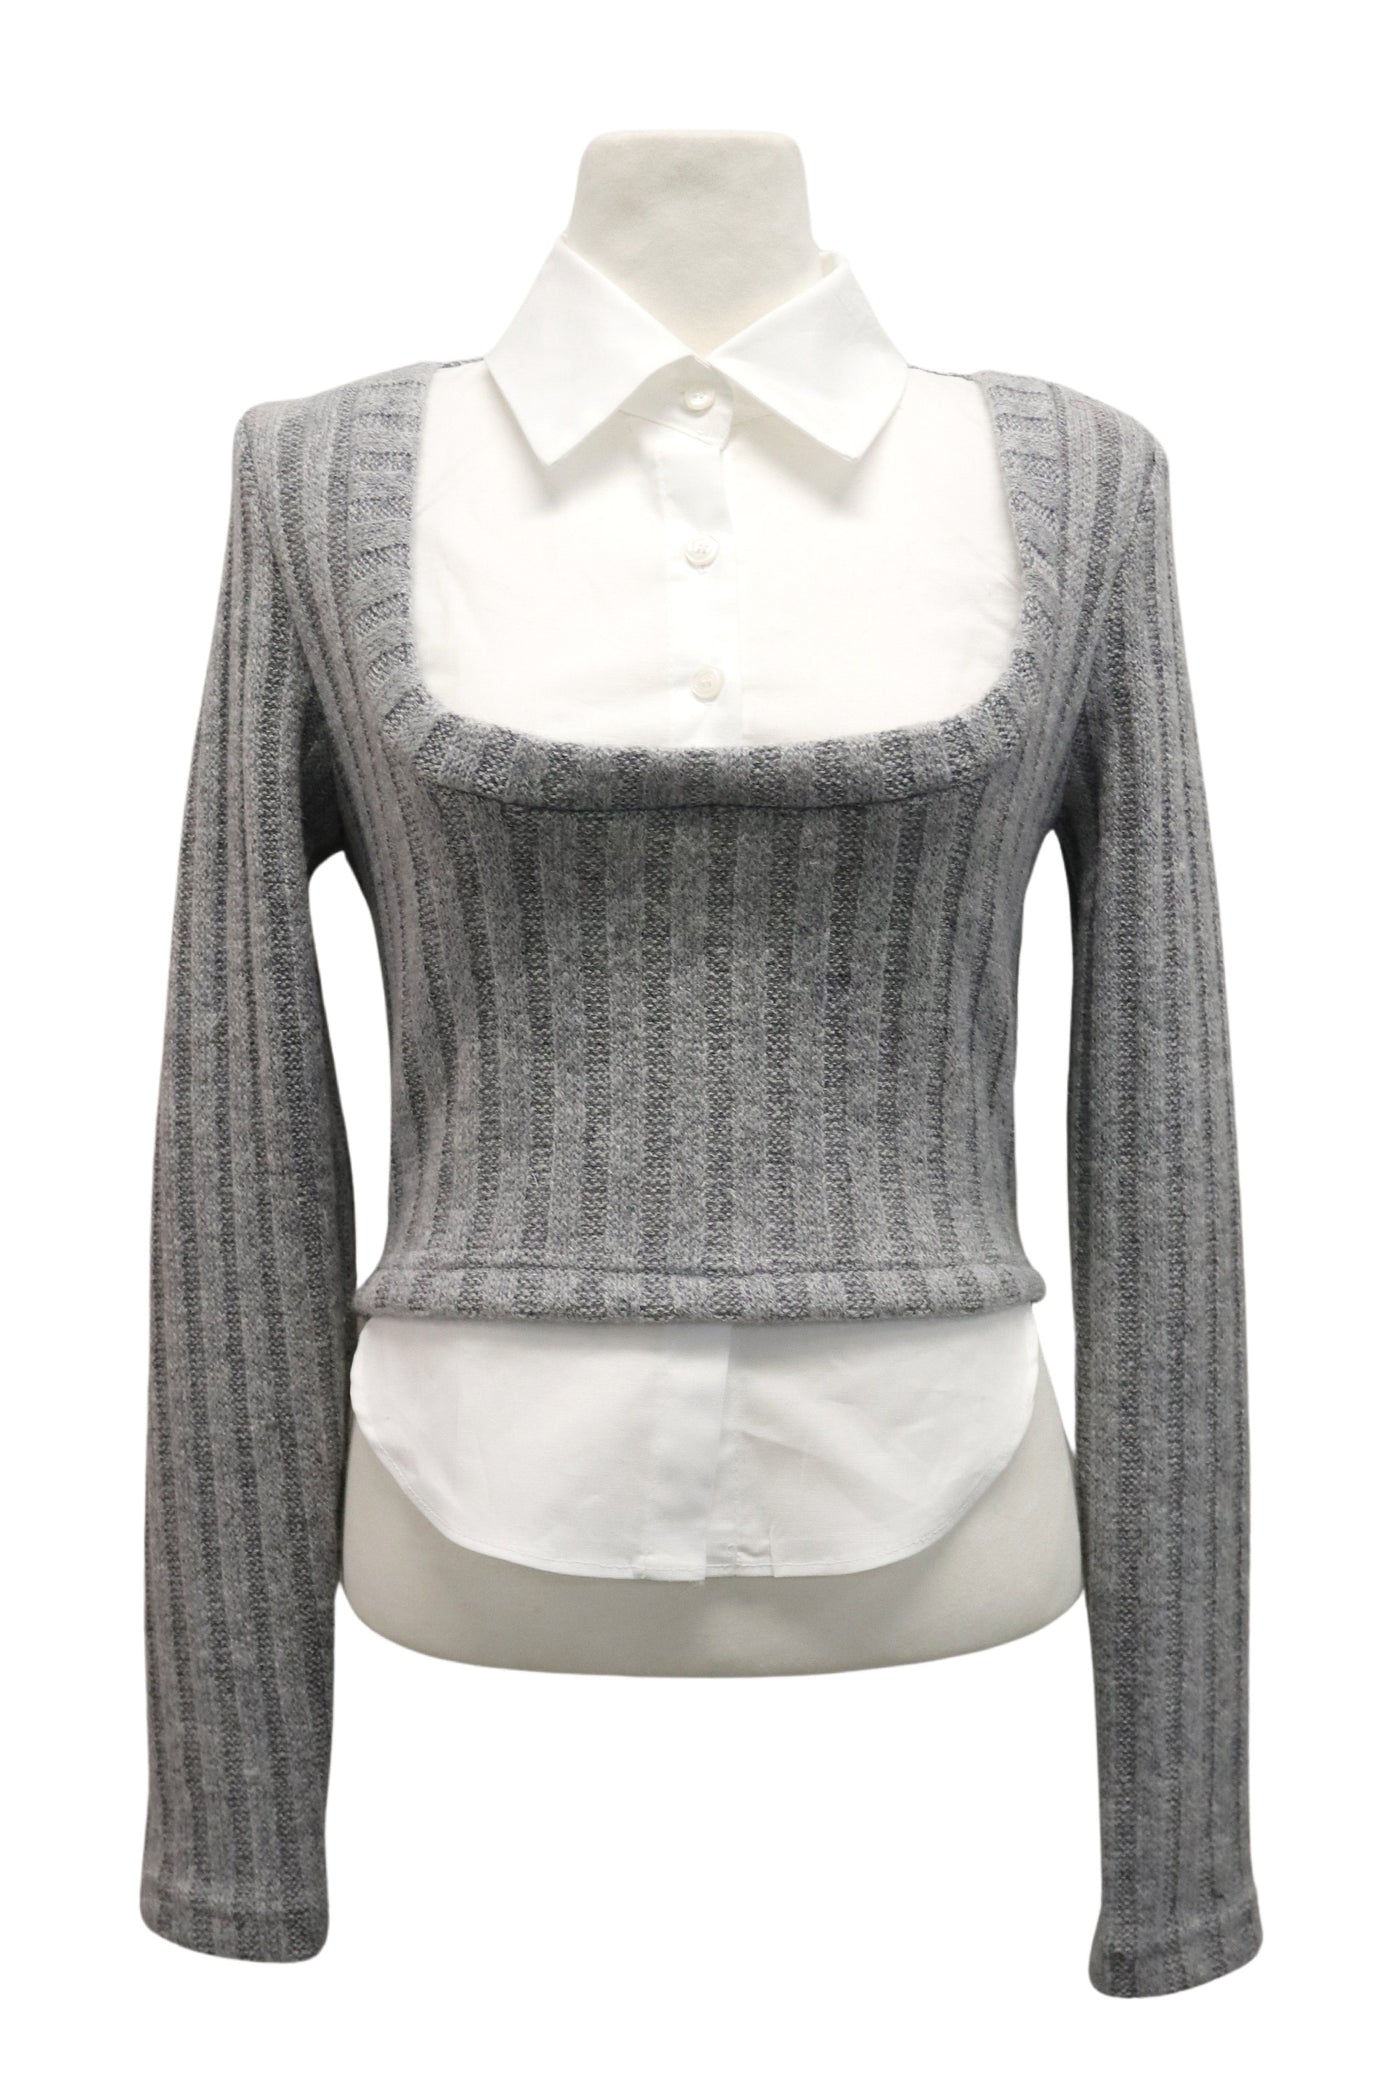 storets.com [NEW]Amelia Shirt Inset Crop Top